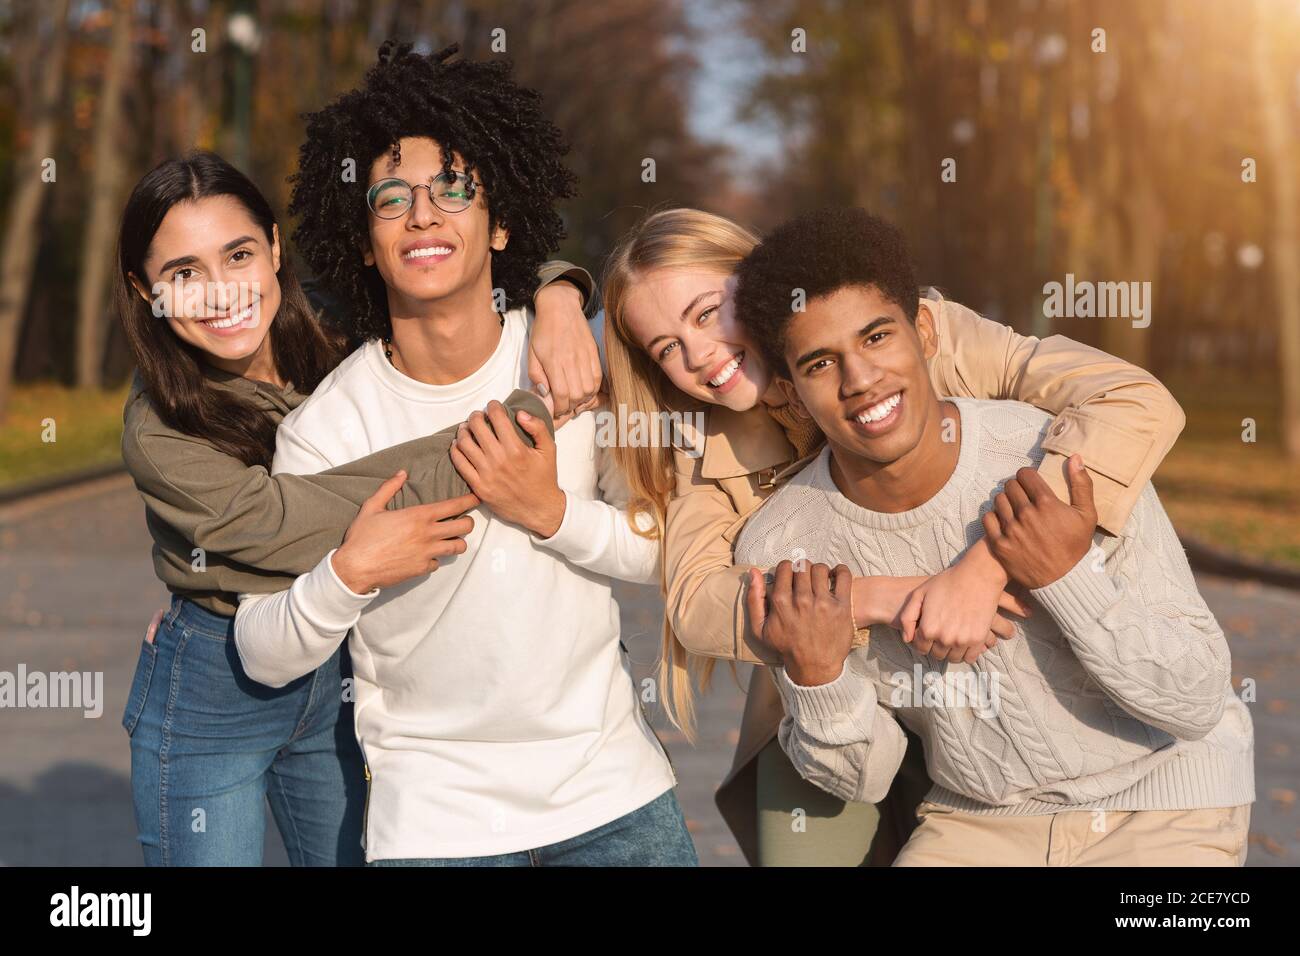 Deux couples de jeunes adolescents multiraciaux se câlinent au parc Banque D'Images